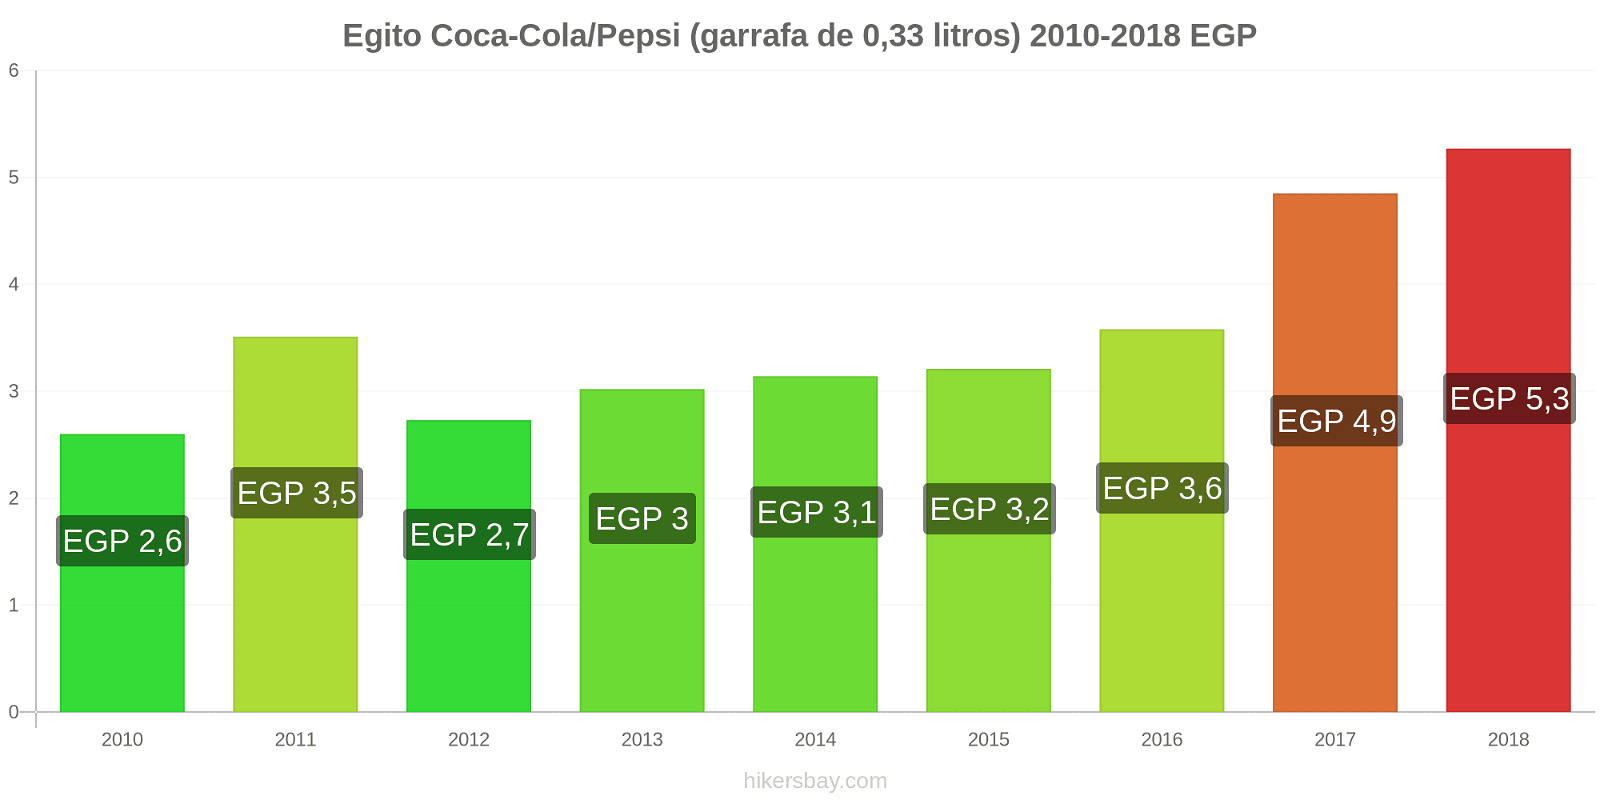 Egito mudanças de preços Coca-Cola/Pepsi (garrafa de 0.33 litros) hikersbay.com